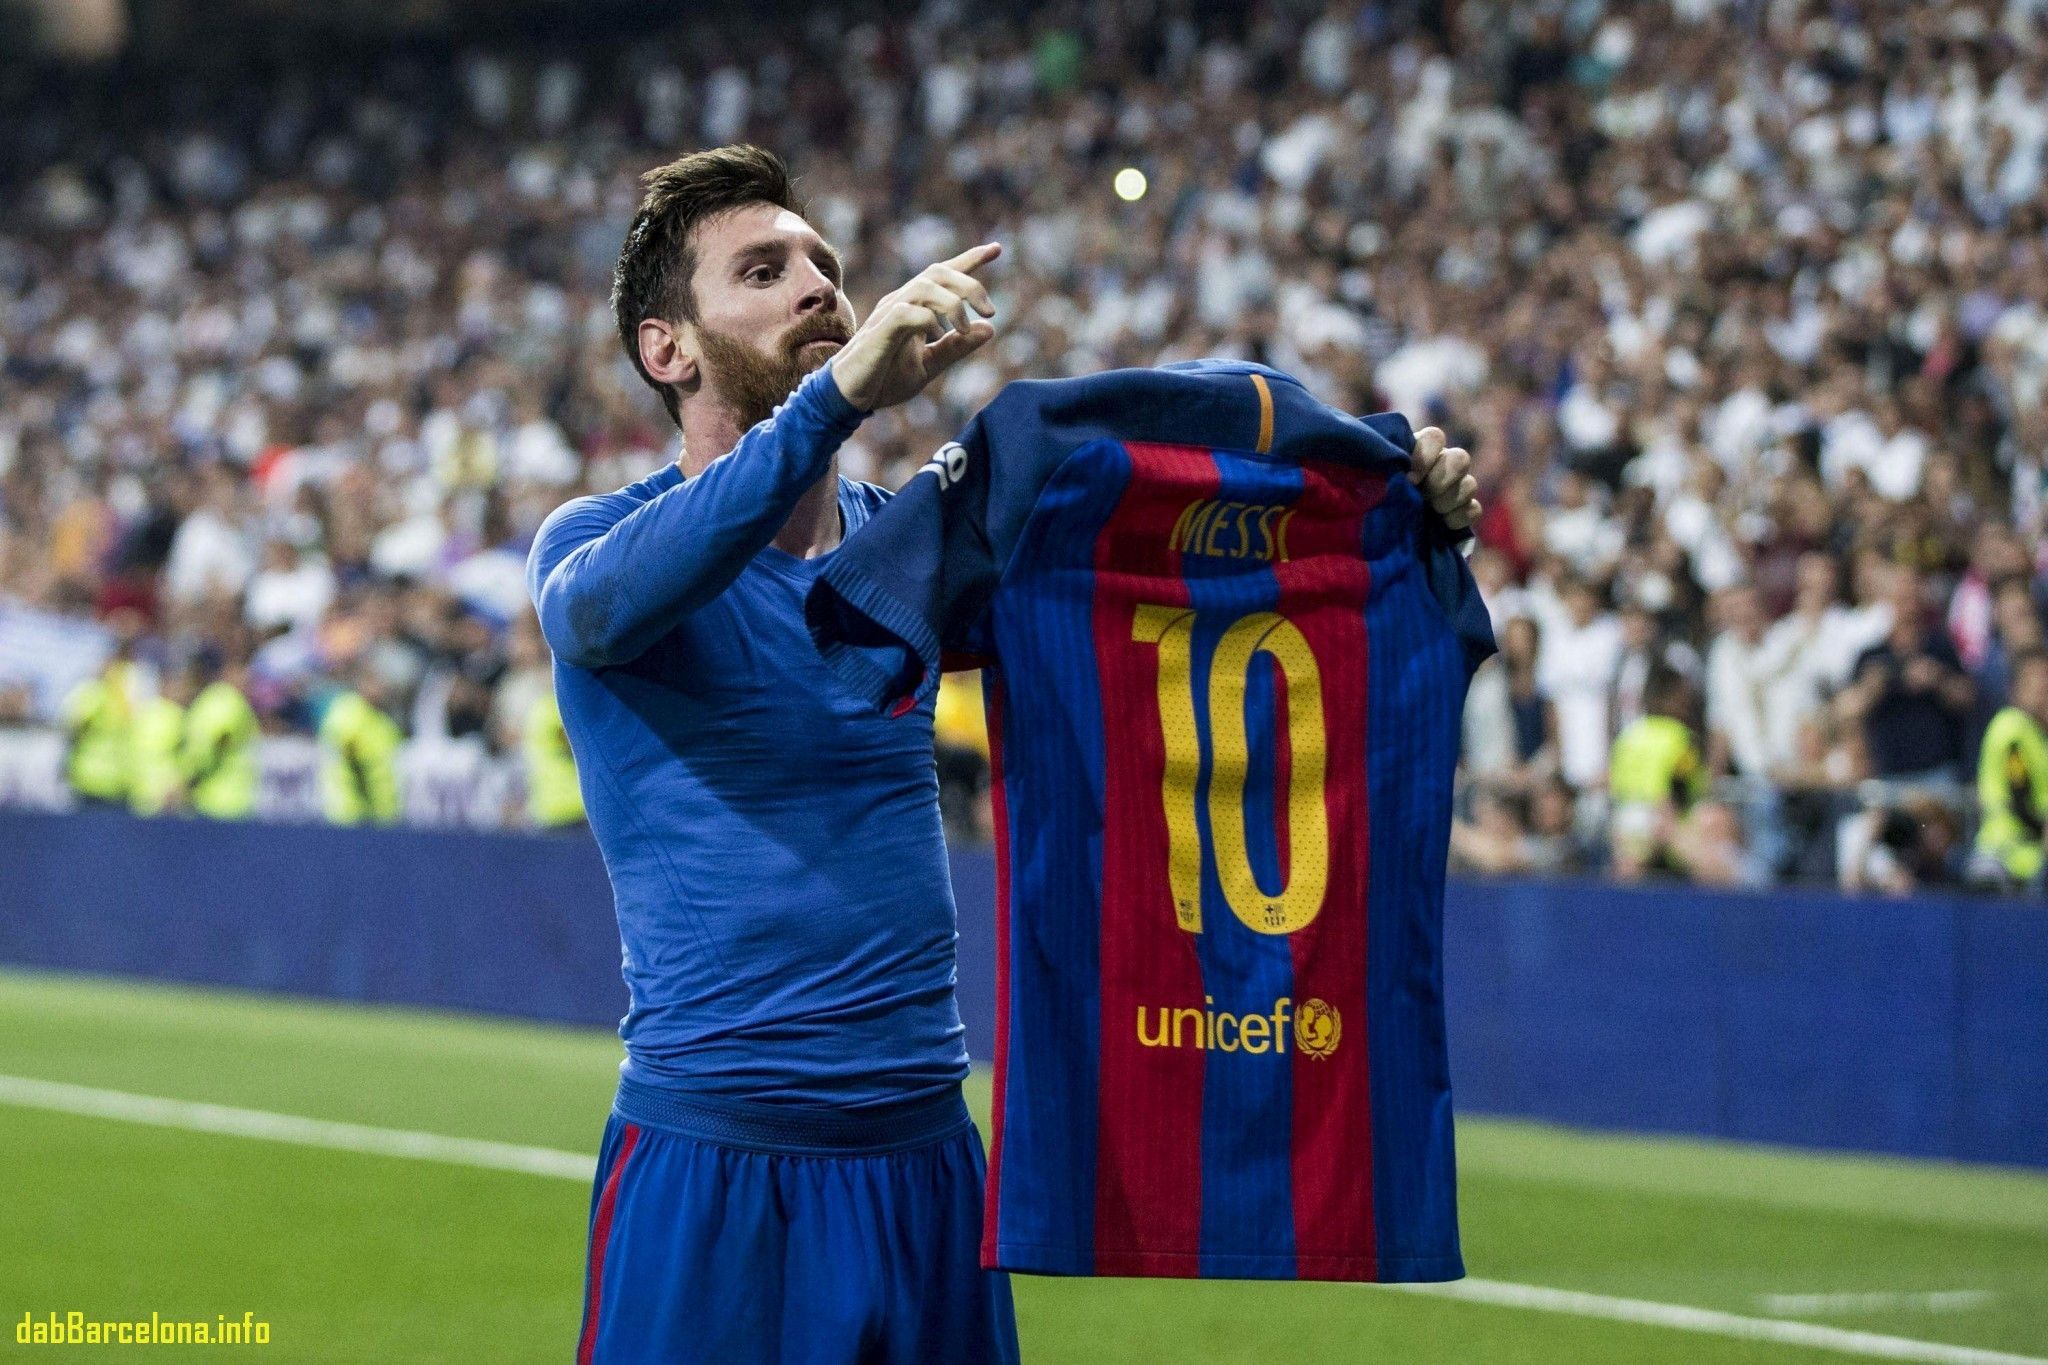 Là fan của Messi và Real Madrid? Bộ sưu tập Messi & Real Madrid wallpapers sẽ làm mãn nhãn trái tim của bạn. Với các hình ảnh độc đáo và đẹp mắt, bạn sẽ không khỏi trầm trồ và muốn sở hữu ngay cho mình một bức ảnh như thế.